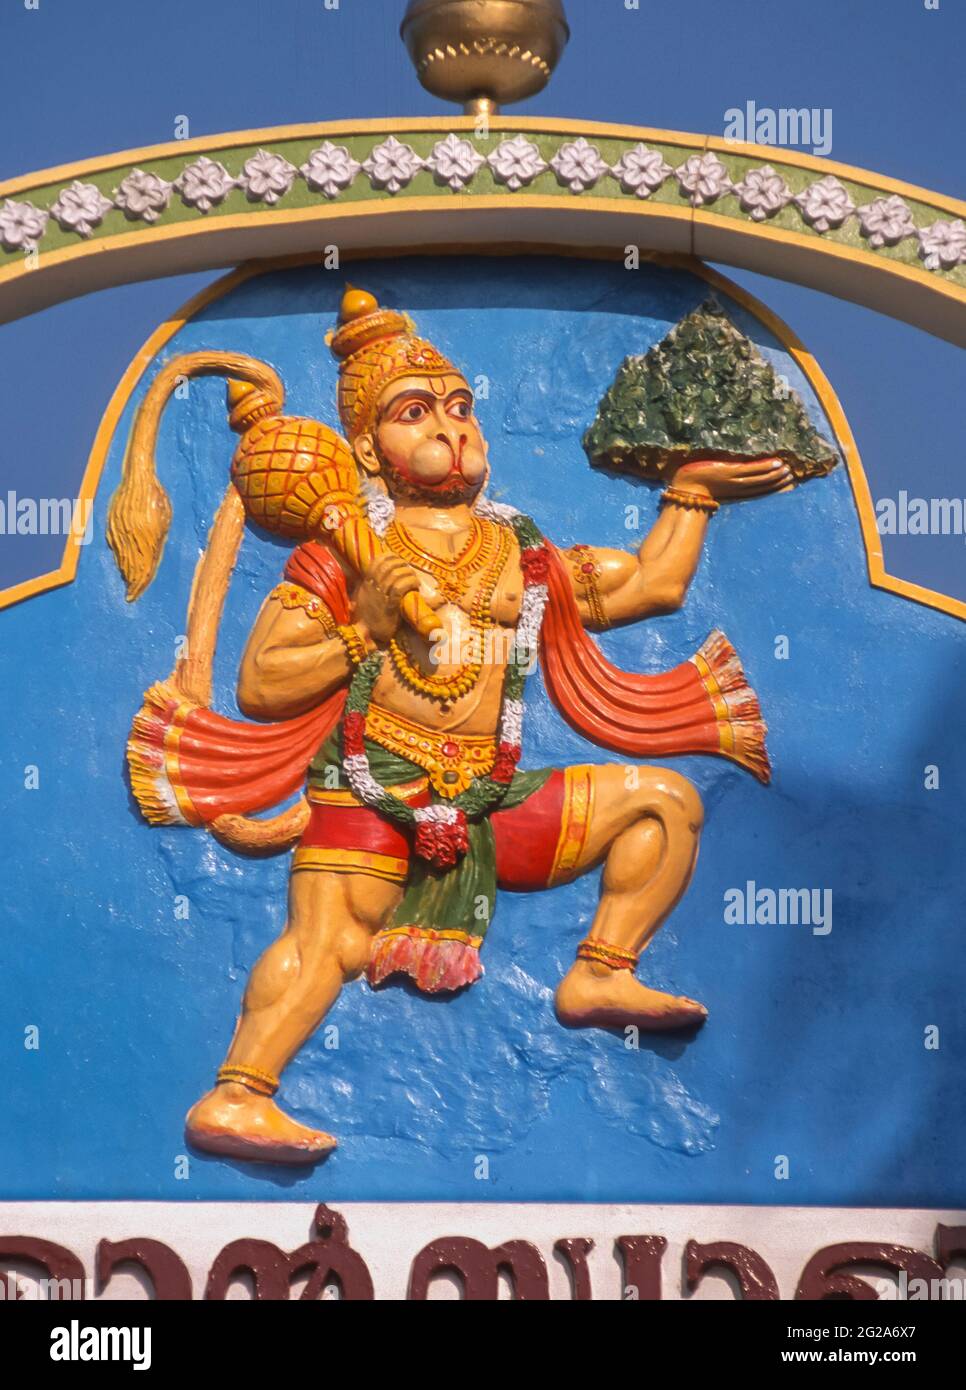 KERALA, INDIA - rappresentazione del dio indù Hanuman sopra la porta del tempio. Solleva la montagna che porta le erbe come prova di forza. Foto Stock